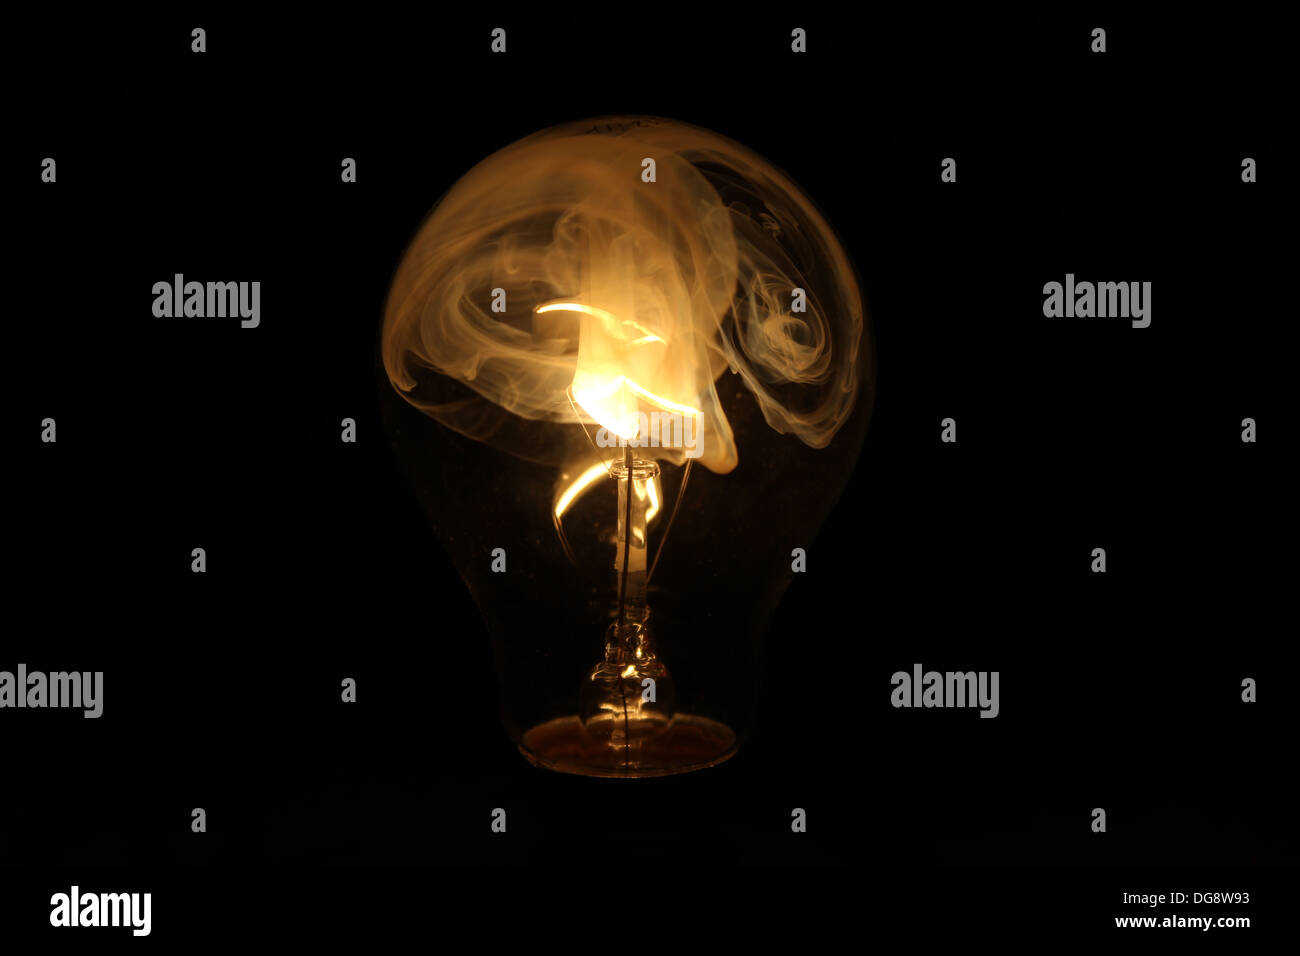 Defekte Glühbirne durchgebrannt Filament rauchen. Bild mit dem Glas auf die  Glühbirne kaputt, die Gas zu ermöglichen, so dass die Wendel brennen  Stockfotografie - Alamy